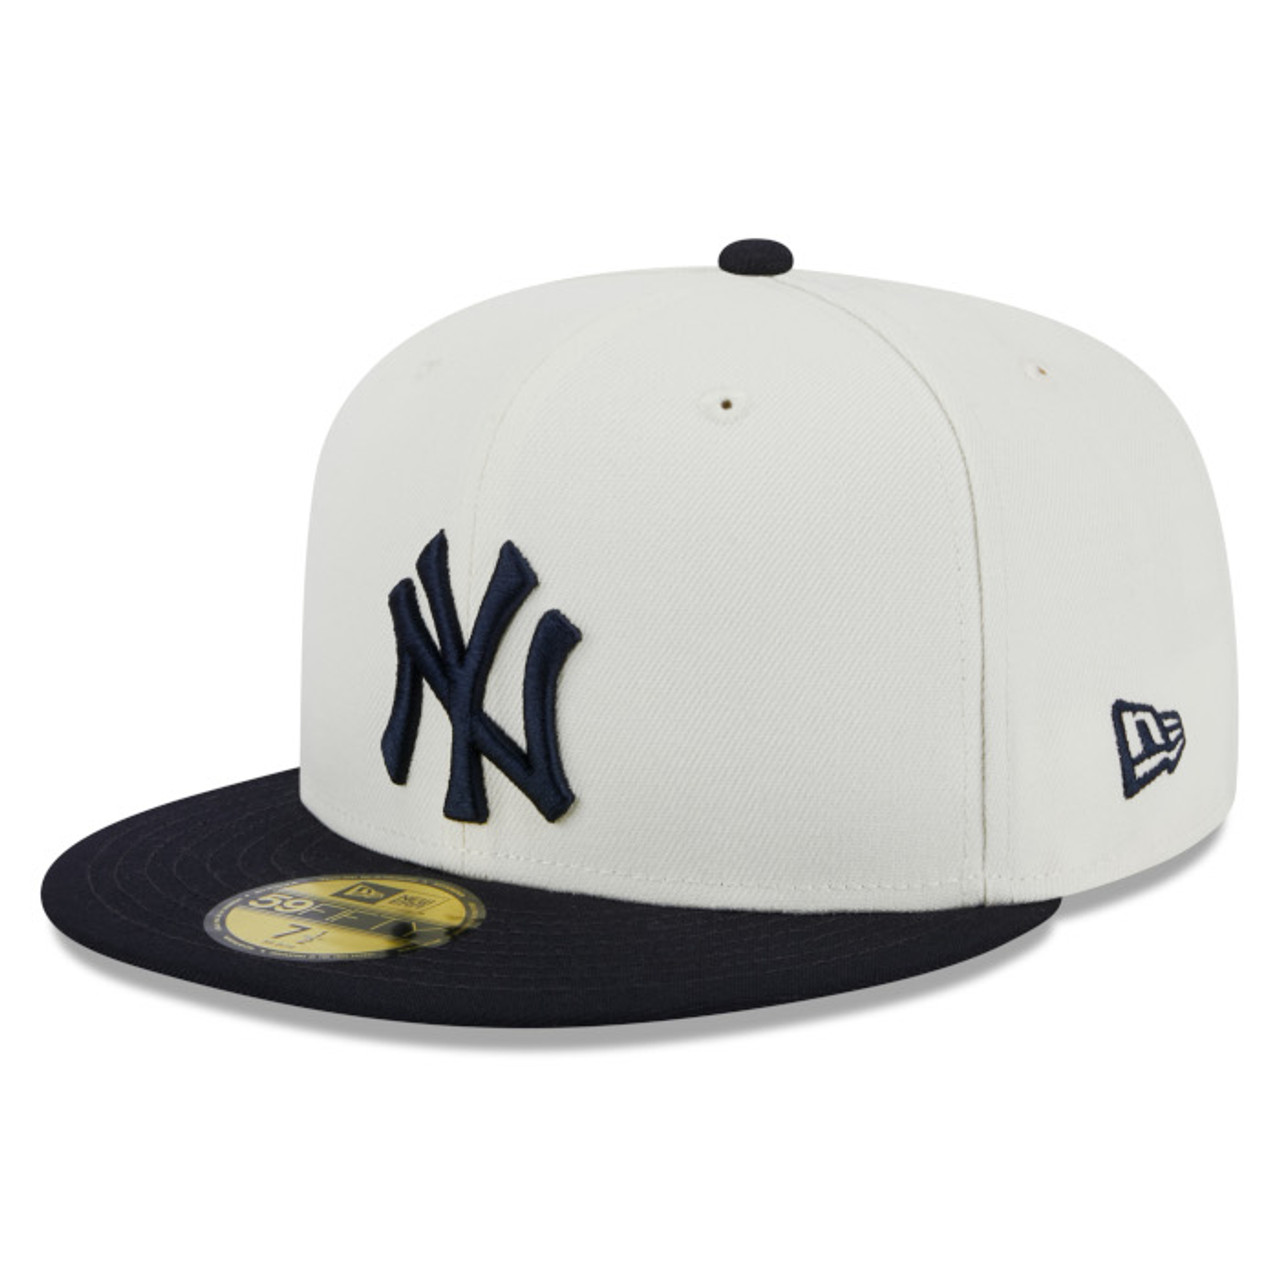 David Ortiz Yankees Hat | lupon.gov.ph